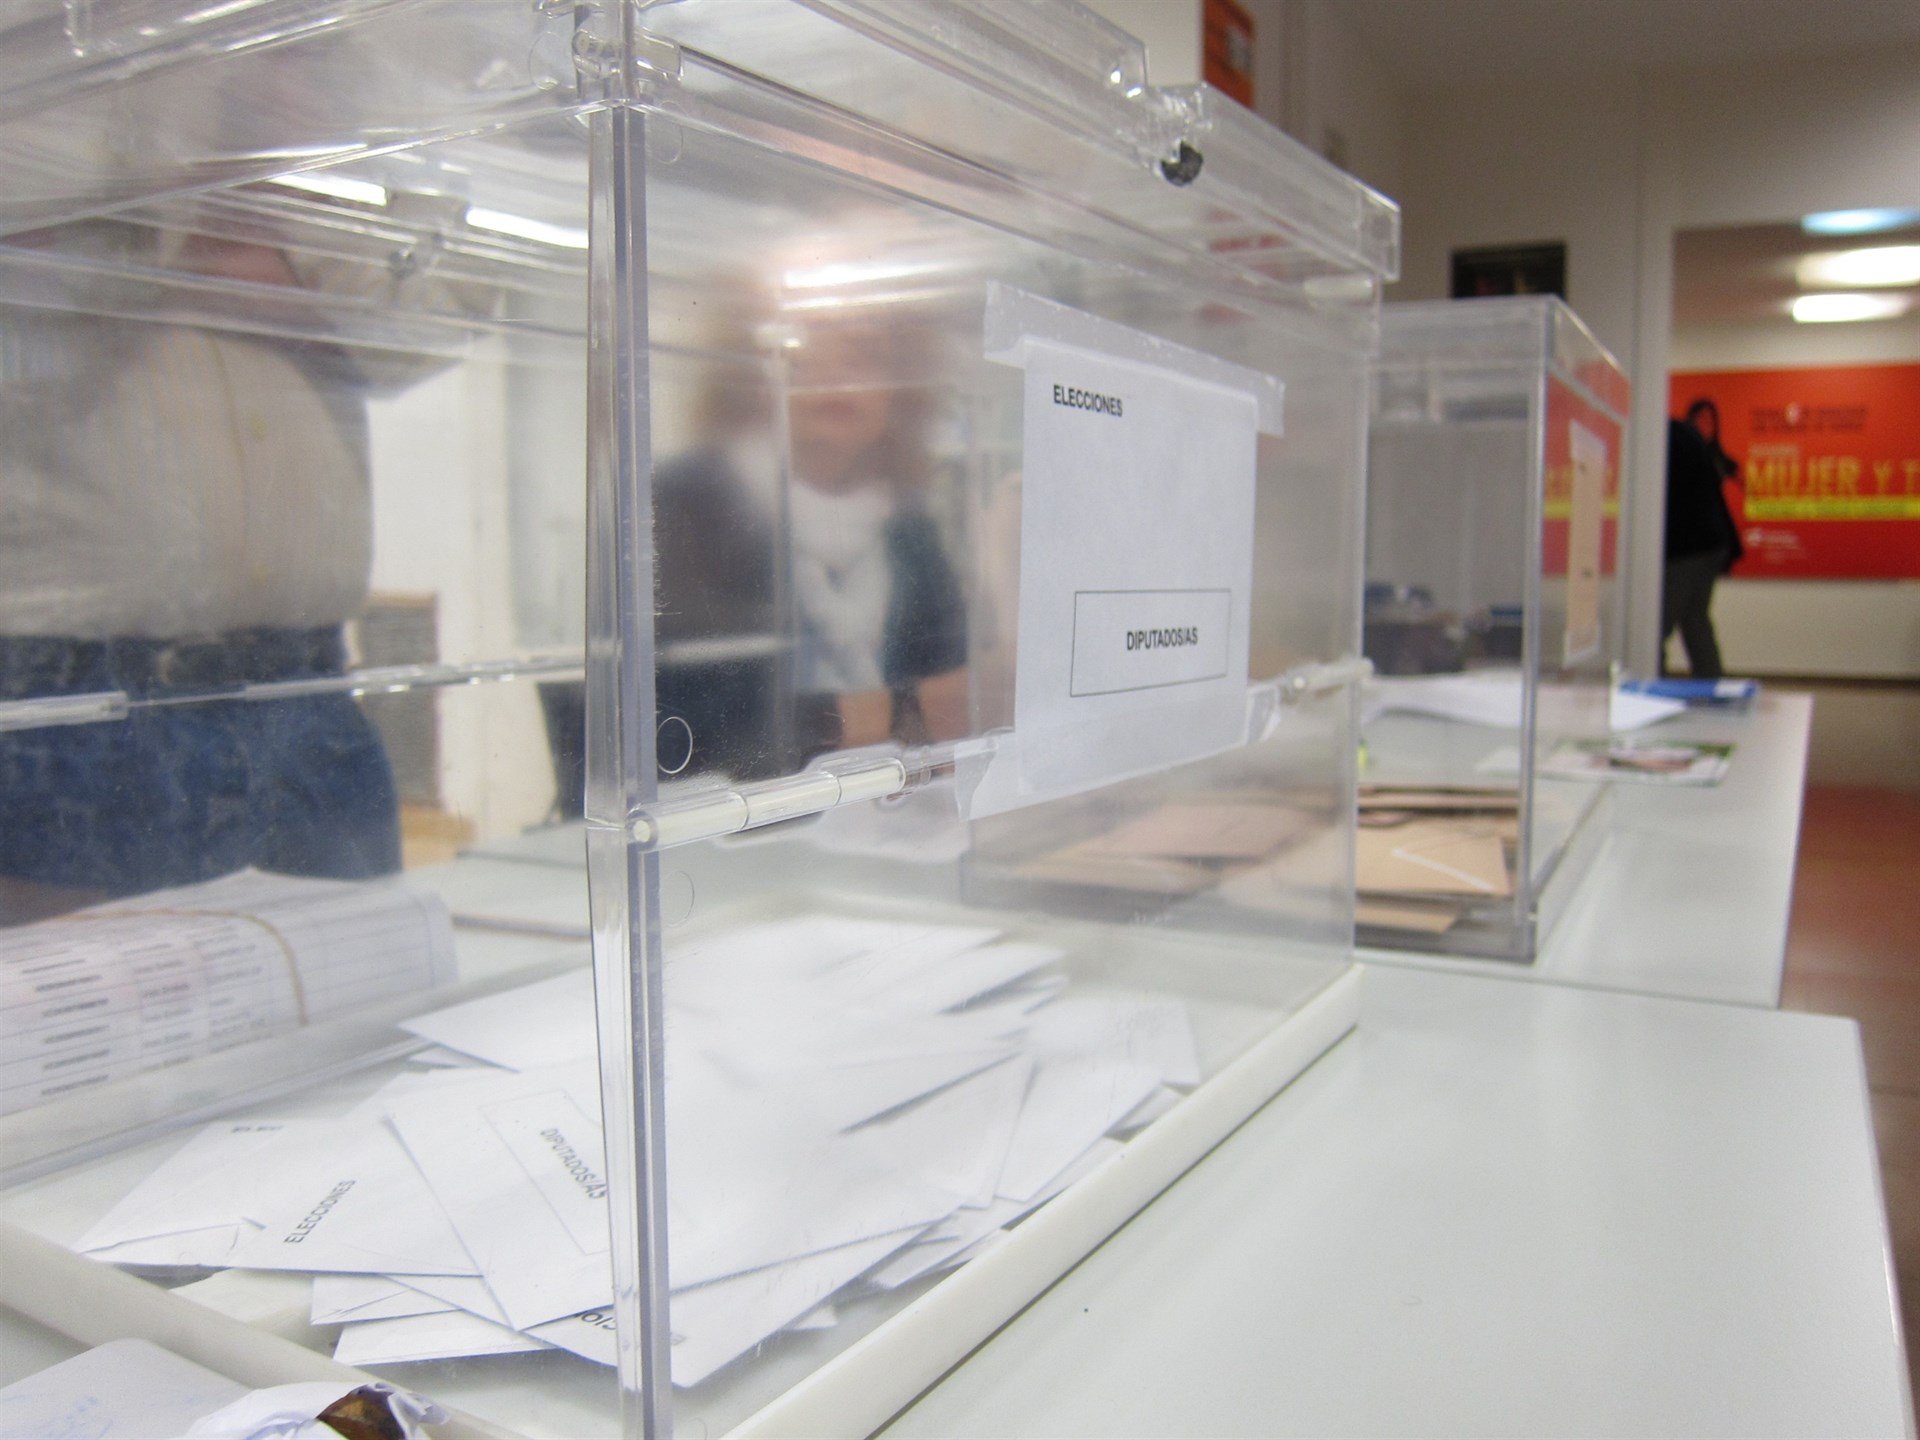 S'amplia en 24 hores el termini per votar per correu a les eleccions del 21-D